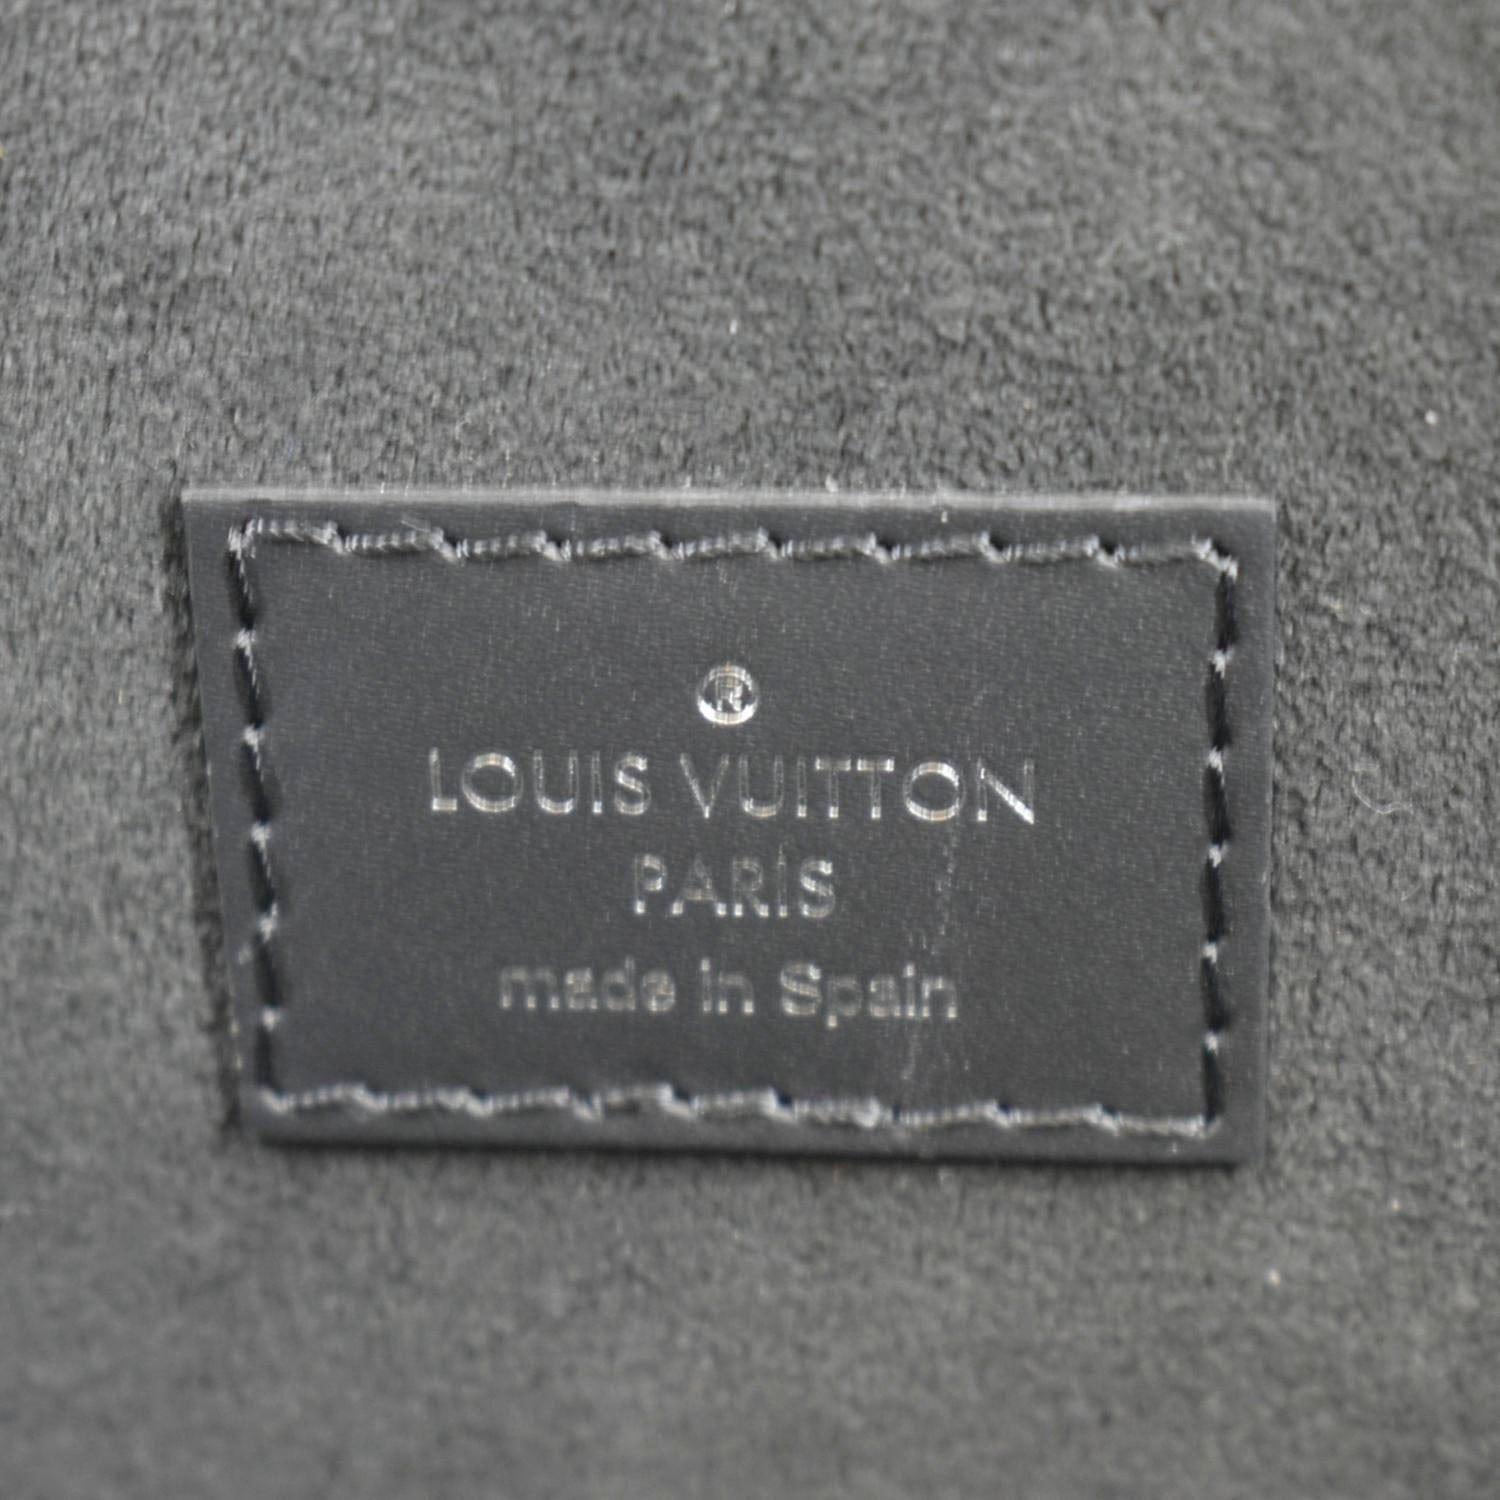 2018 Louis Vuitton Epi Leather Neverfull Pochette in Denim Blue -  Harrington & Co.